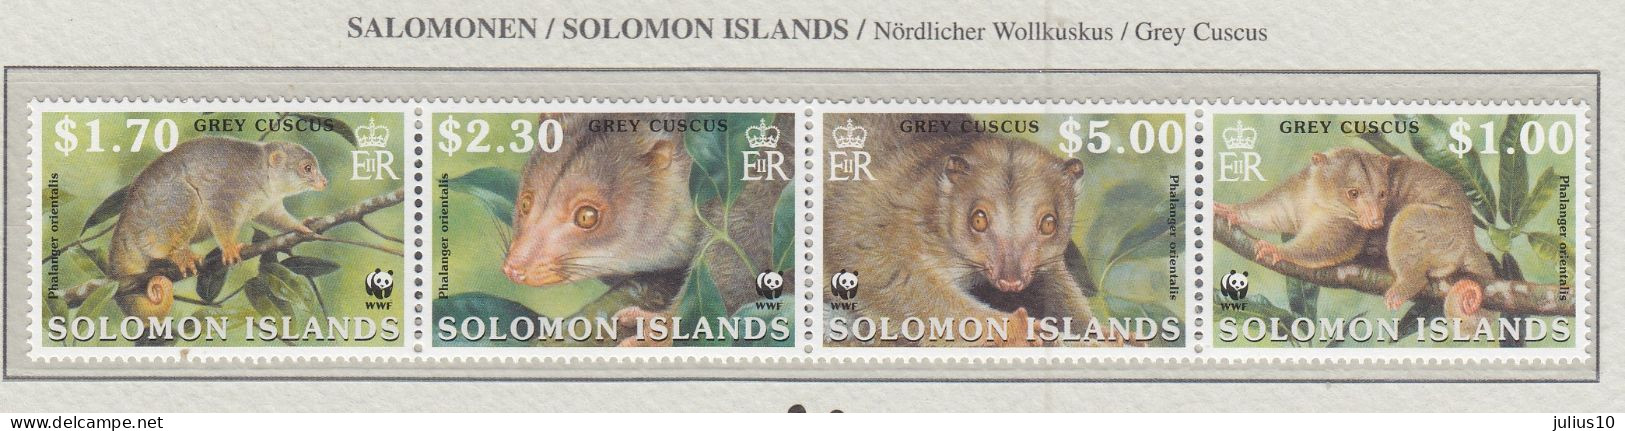 SOLOMON ISLANDS 2002 WWF Animals Mi 1062-1065 MNH(**) Fauna 656 - Neufs